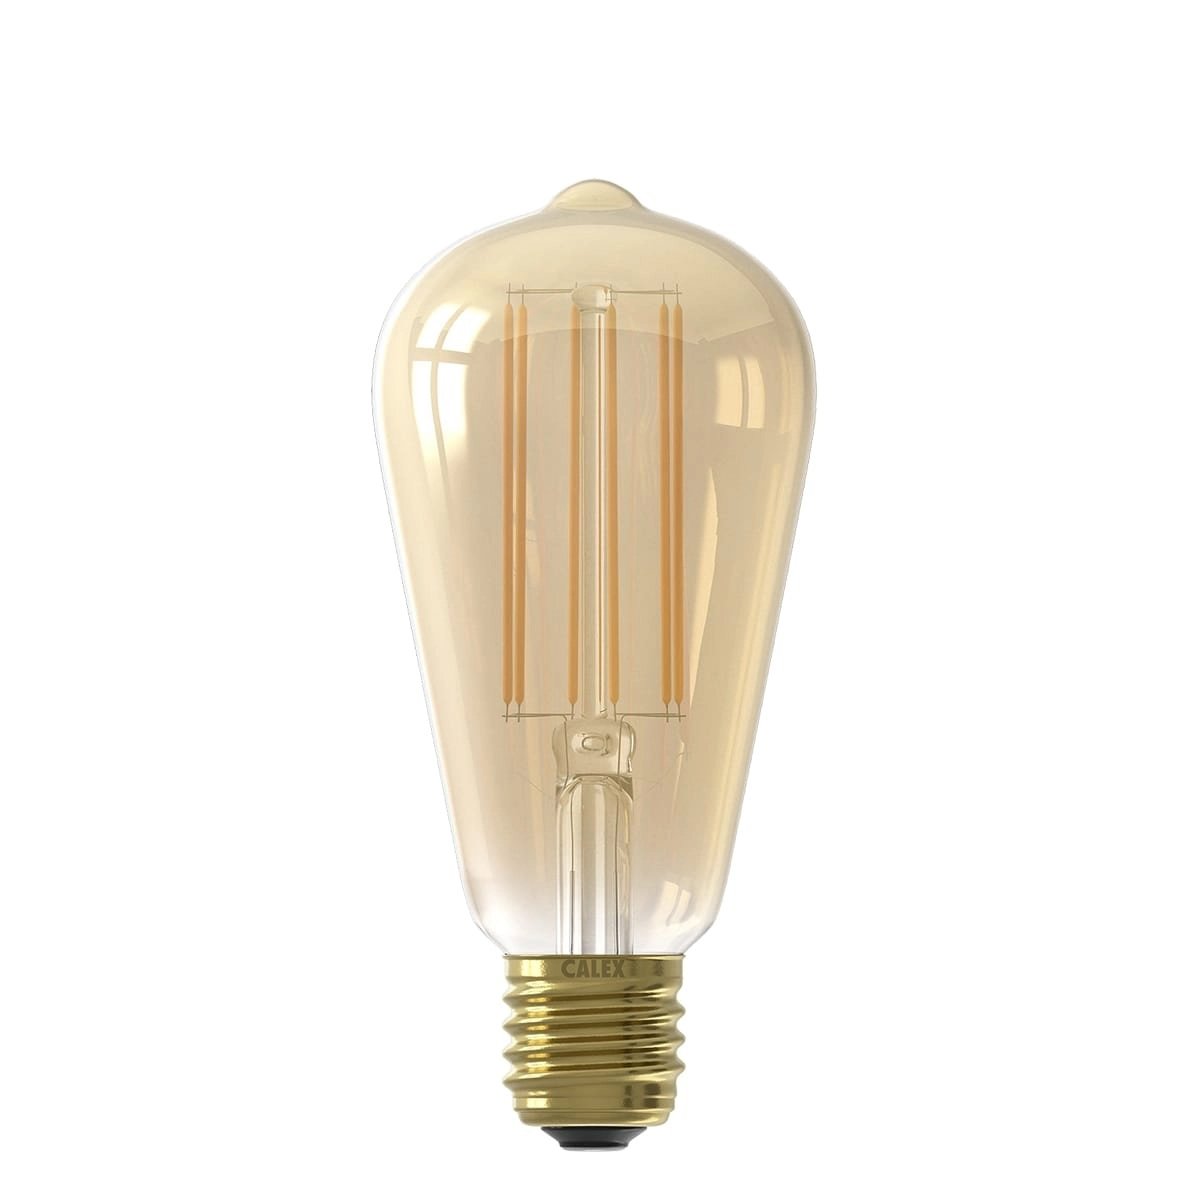 Ledlamp filament Rustic Goud - 4.5W